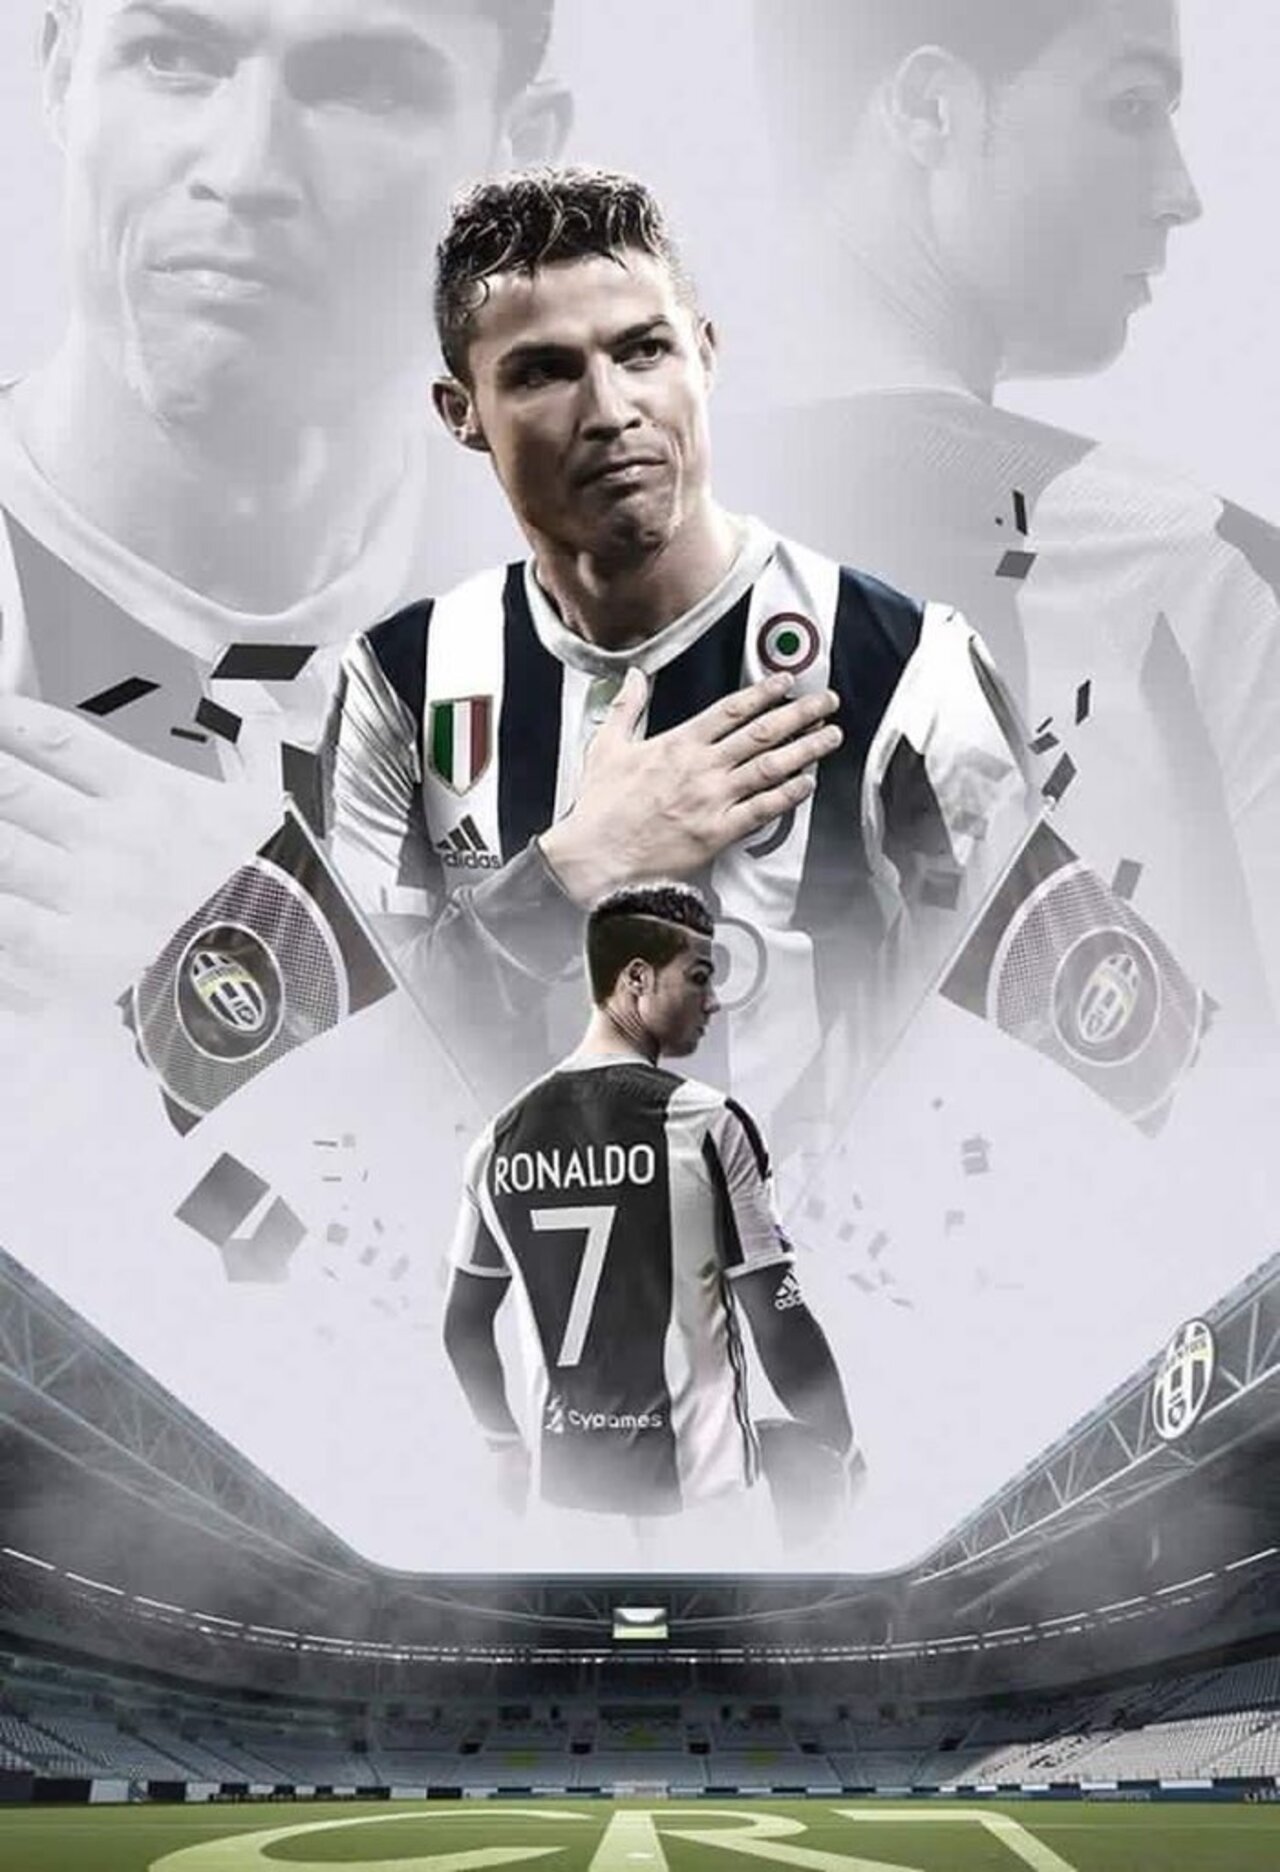 Cùng đón xem hình nền Ronaldo Juventus và cảm nhận sự nhanh nhạy, mạnh mẽ của ngôi sao này. Hình nền đầy màu sắc sẽ khiến cho màn hình của bạn trở nên sống động hơn, cùng truyền tải thông điệp về tình yêu và niềm đam mê với bóng đá.